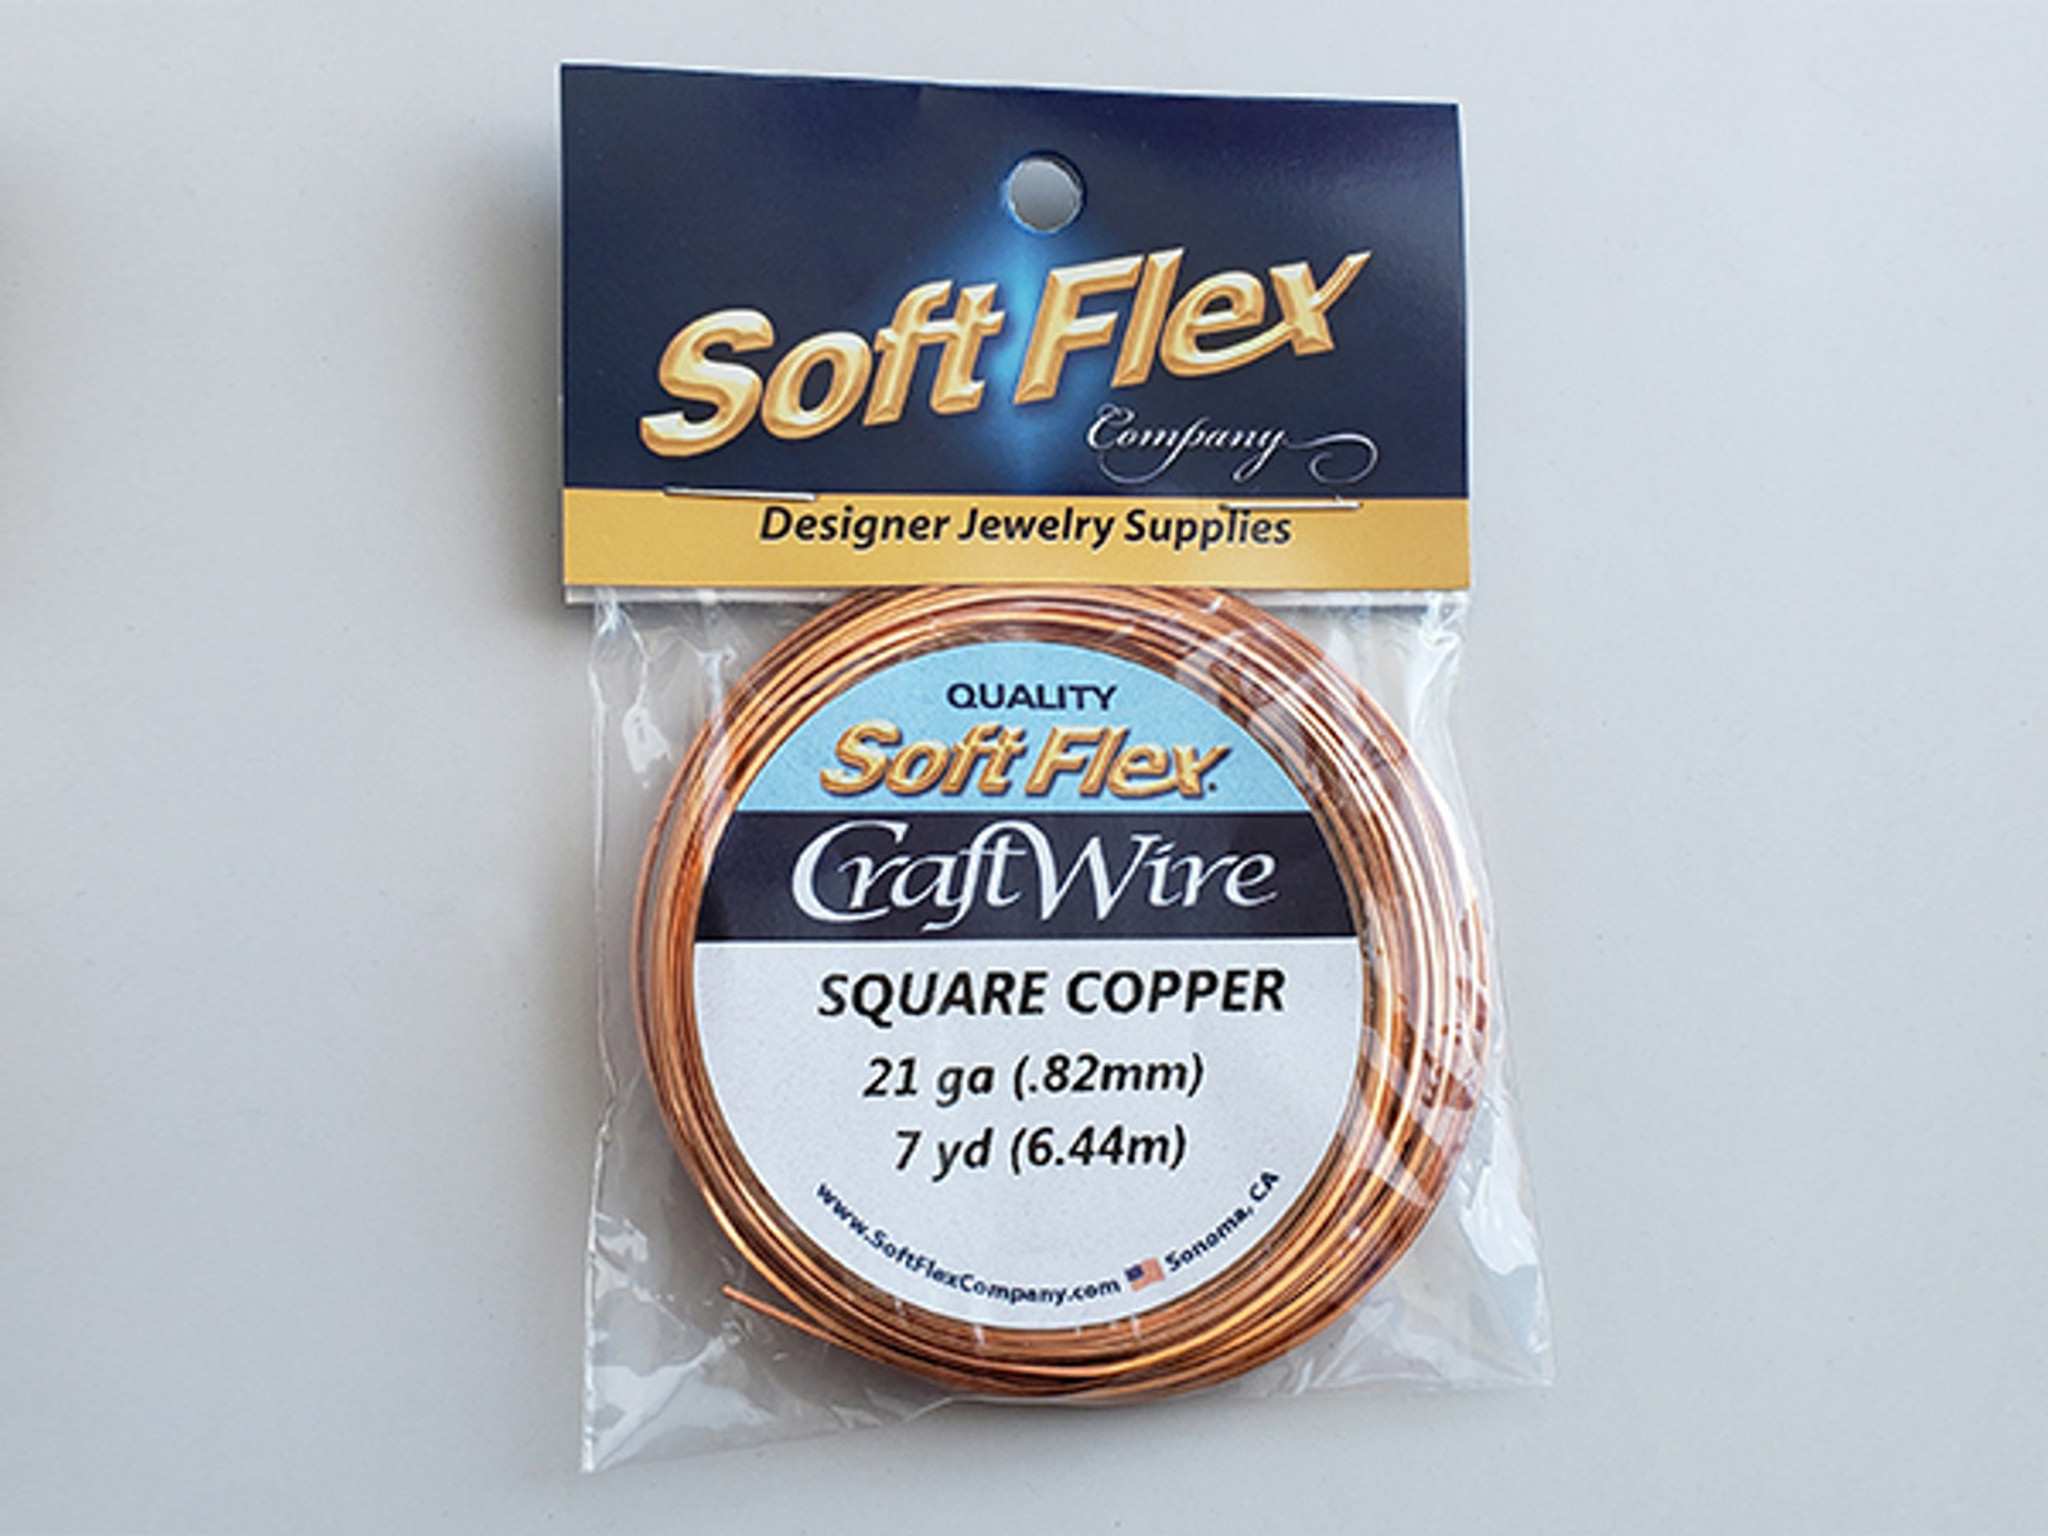 Soft Flex Craft Wire Non-Tarnish Copper